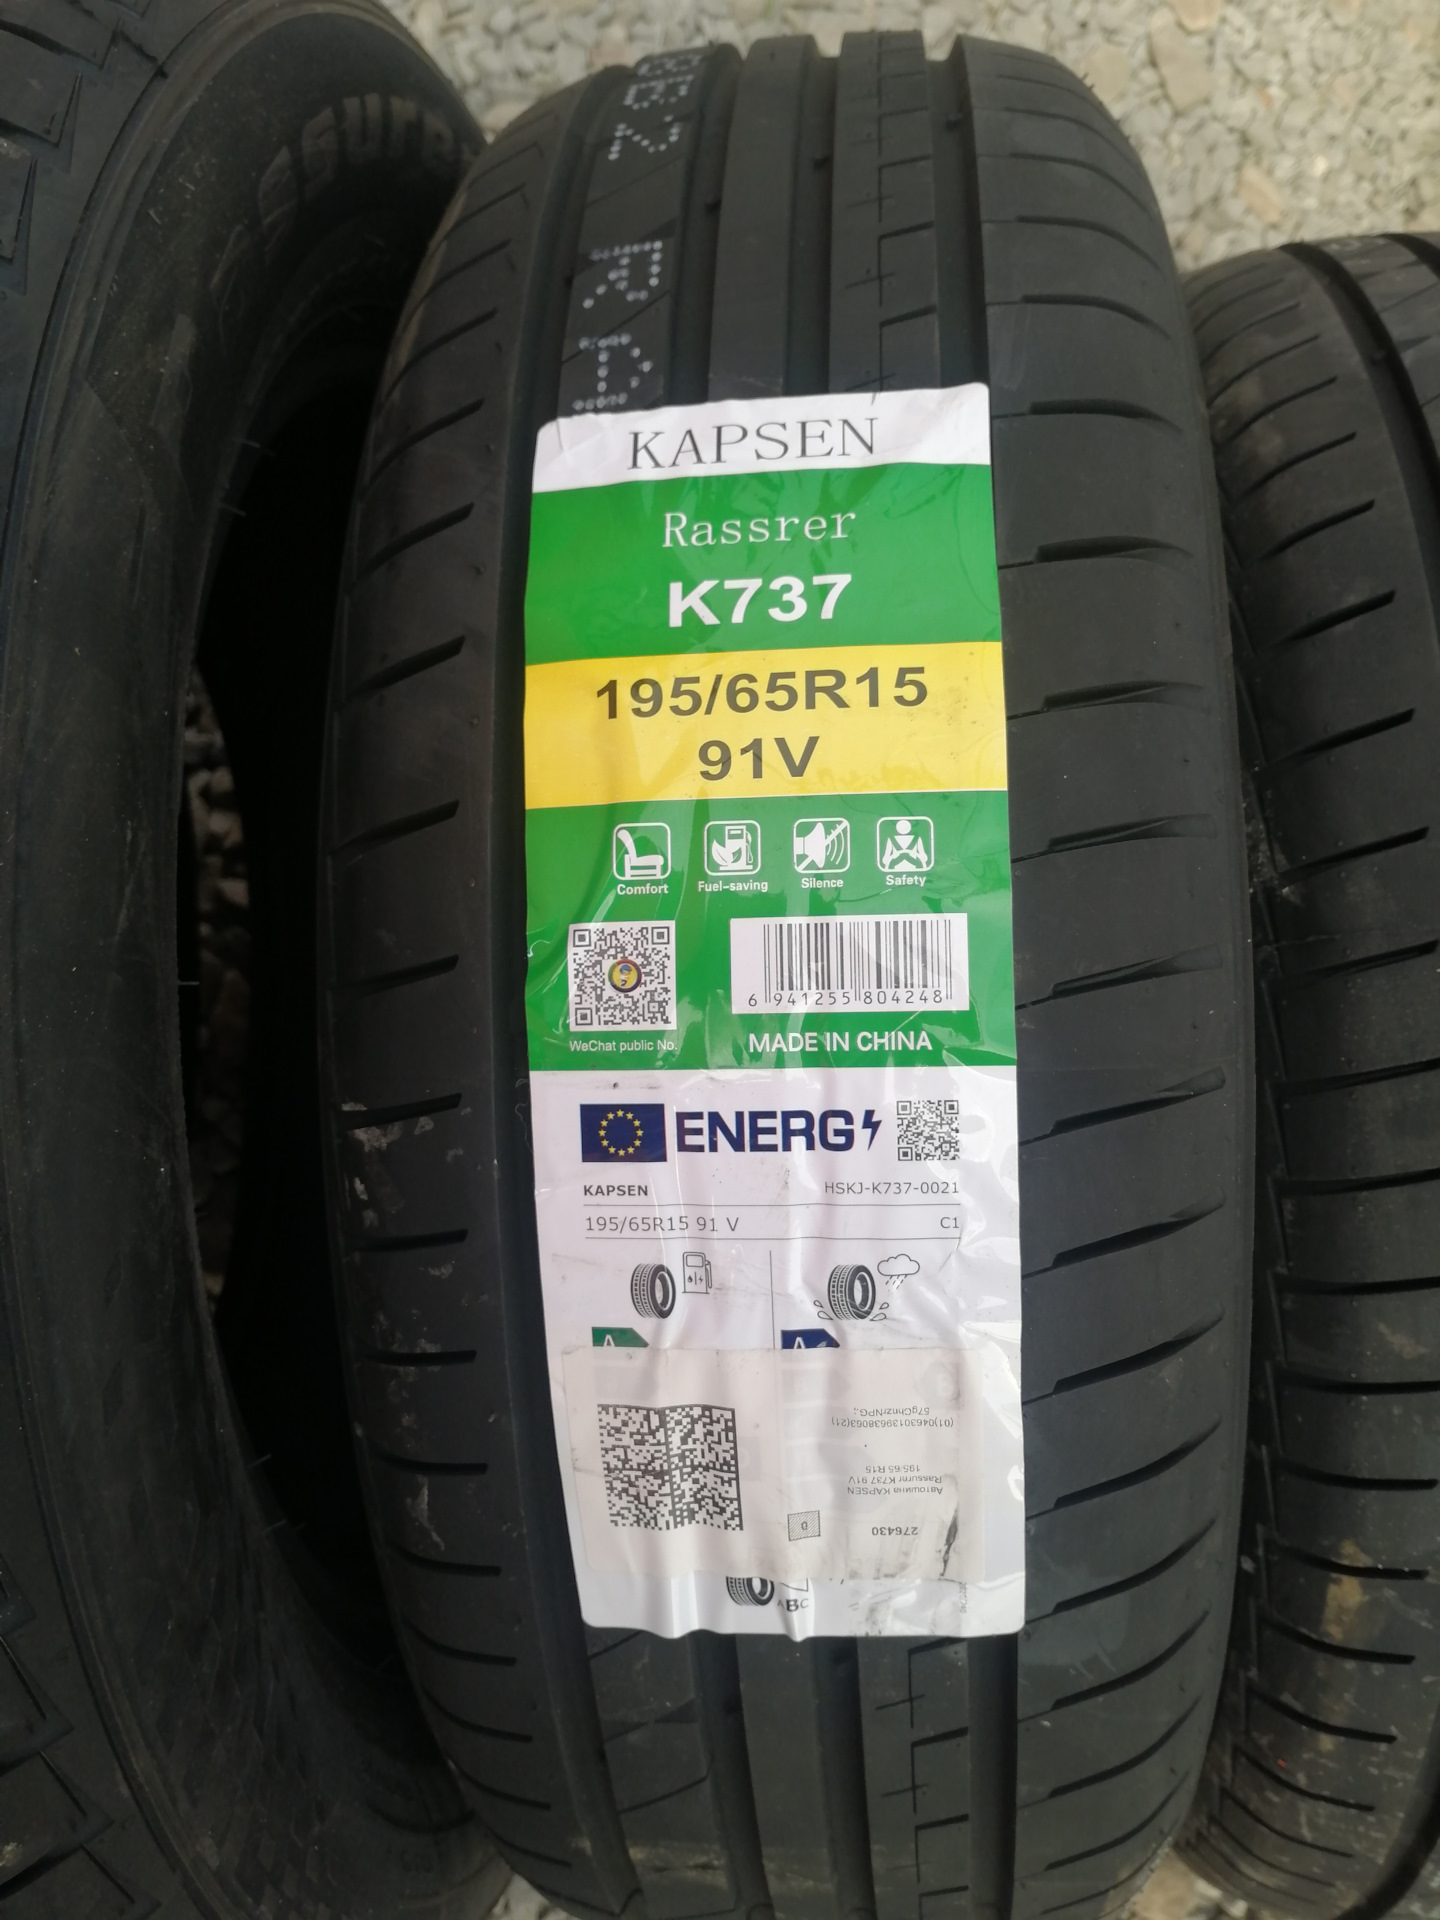 Kapsen k737. Hilo шина 205 65 15. 195/65 R15 бюджетные недорогие шины. Резина 195 60 13.